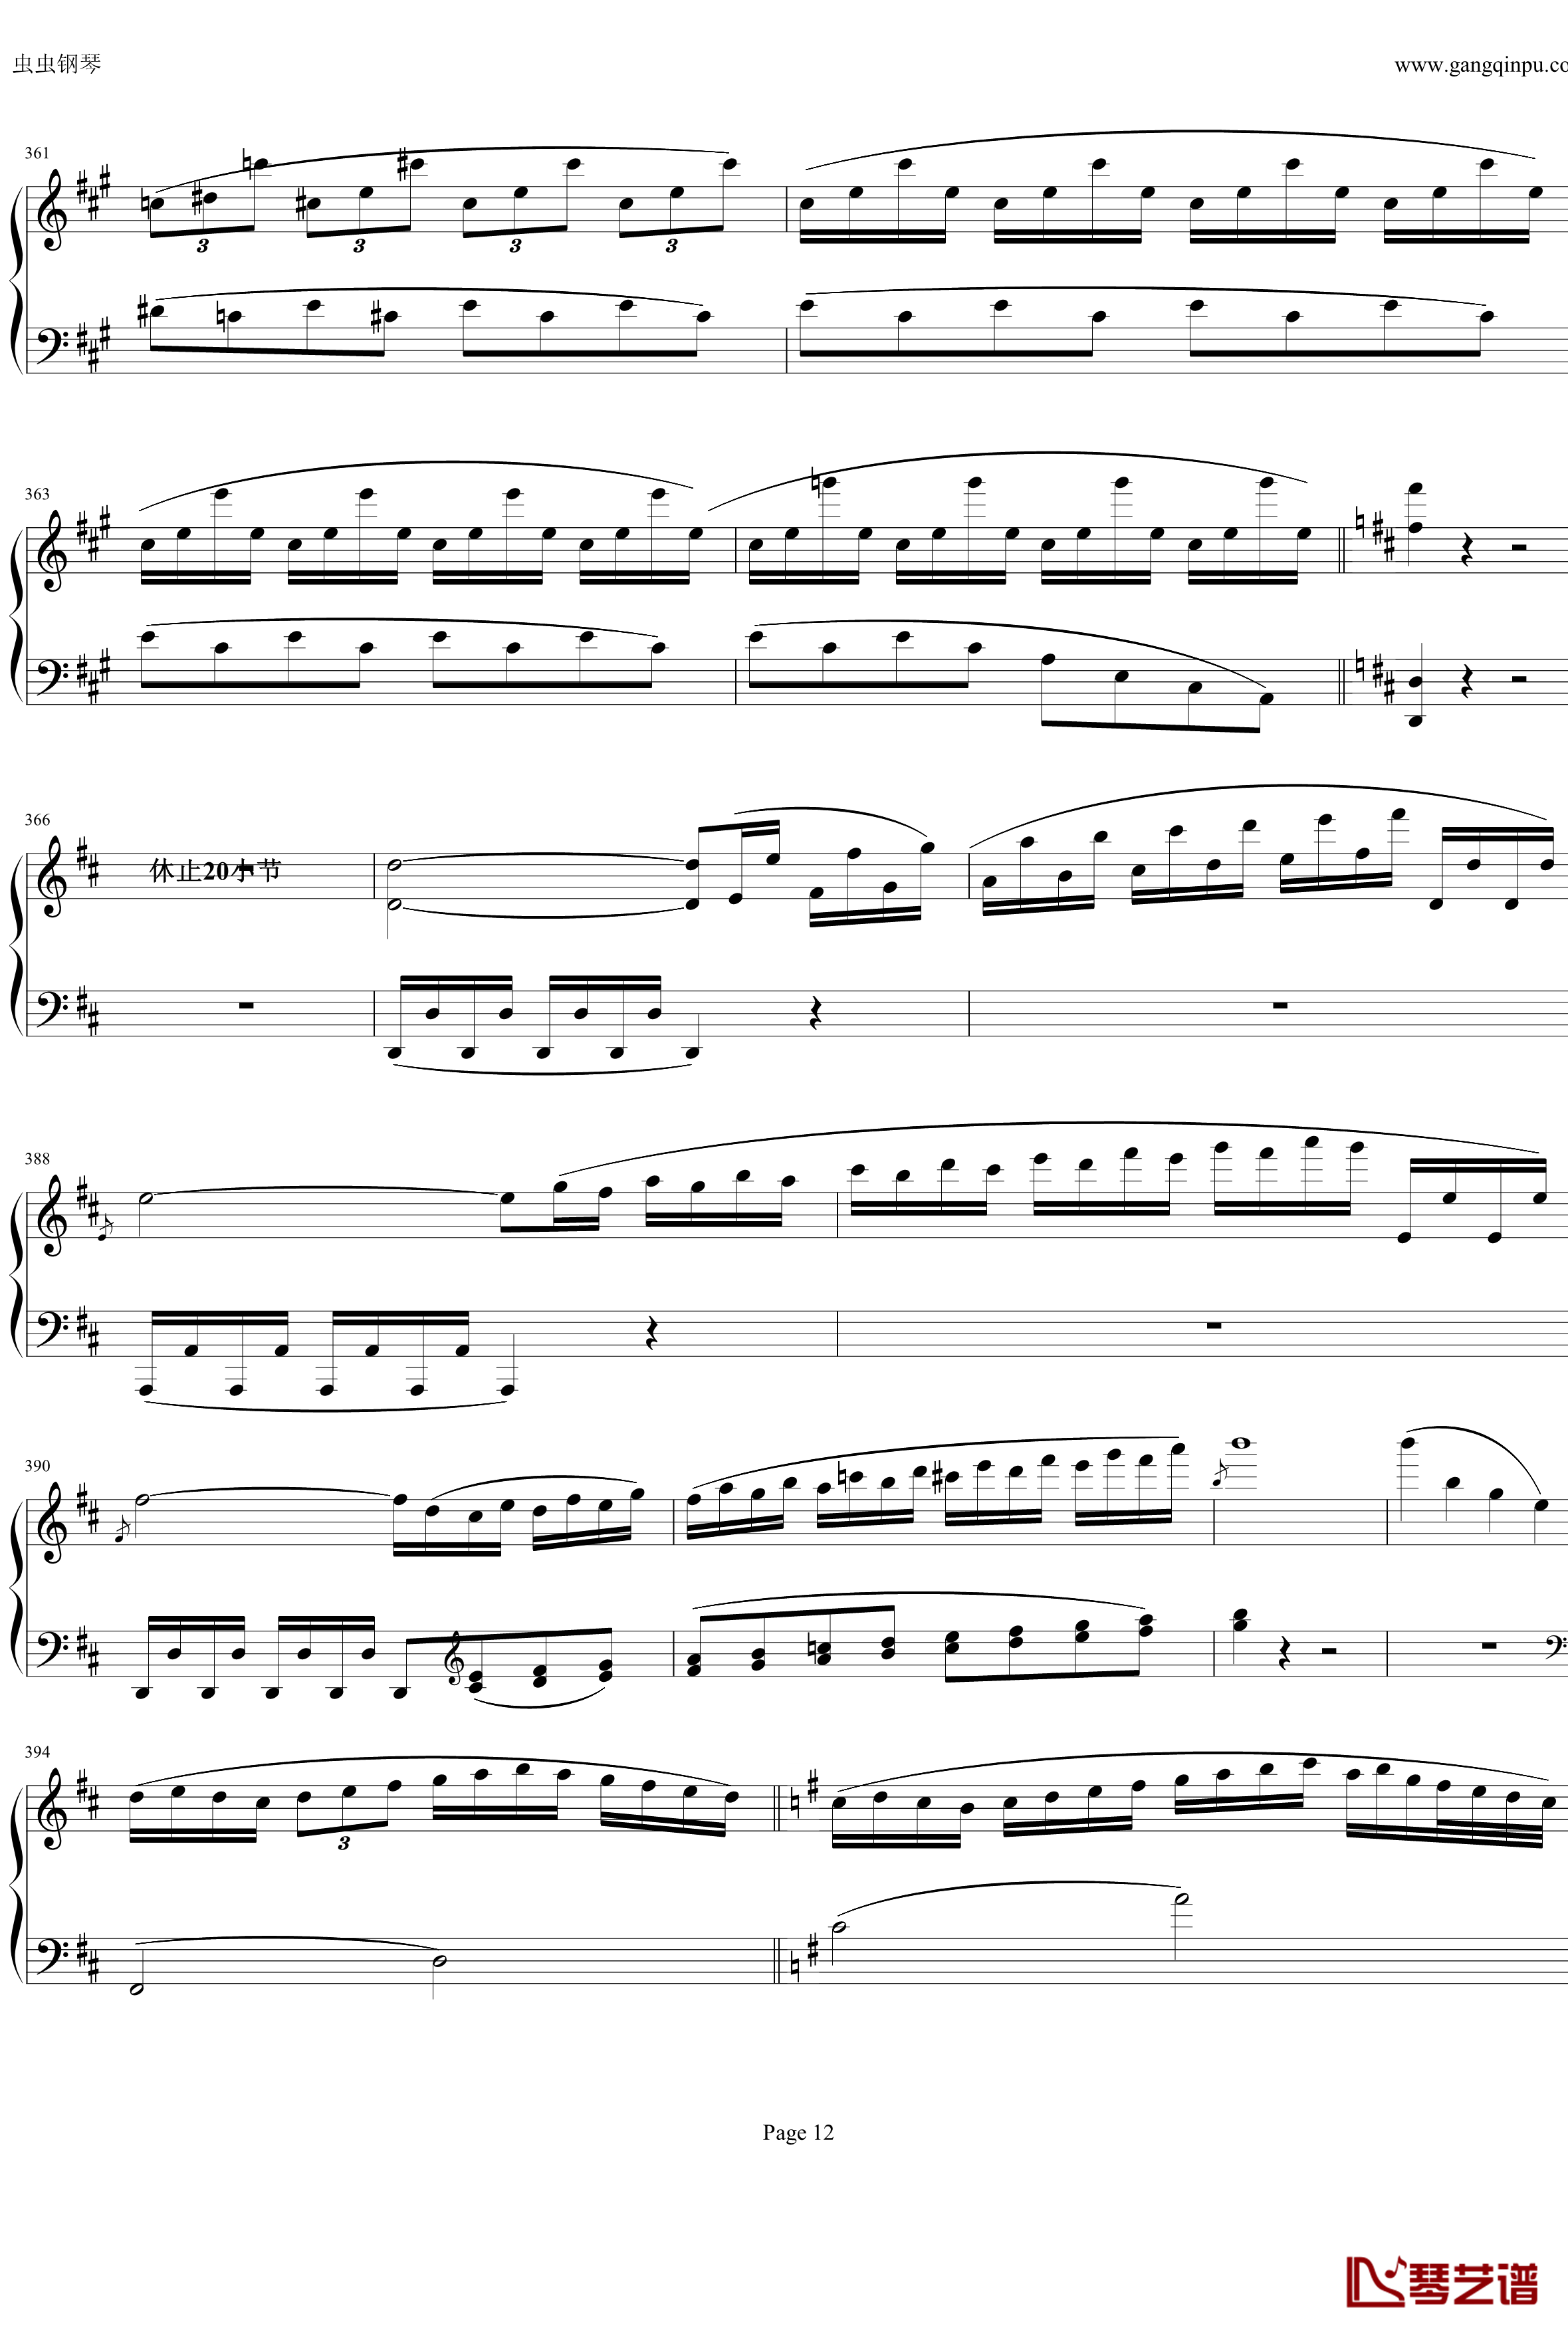 钢琴协奏曲Op61第一乐章钢琴谱-贝多芬-beethoven12